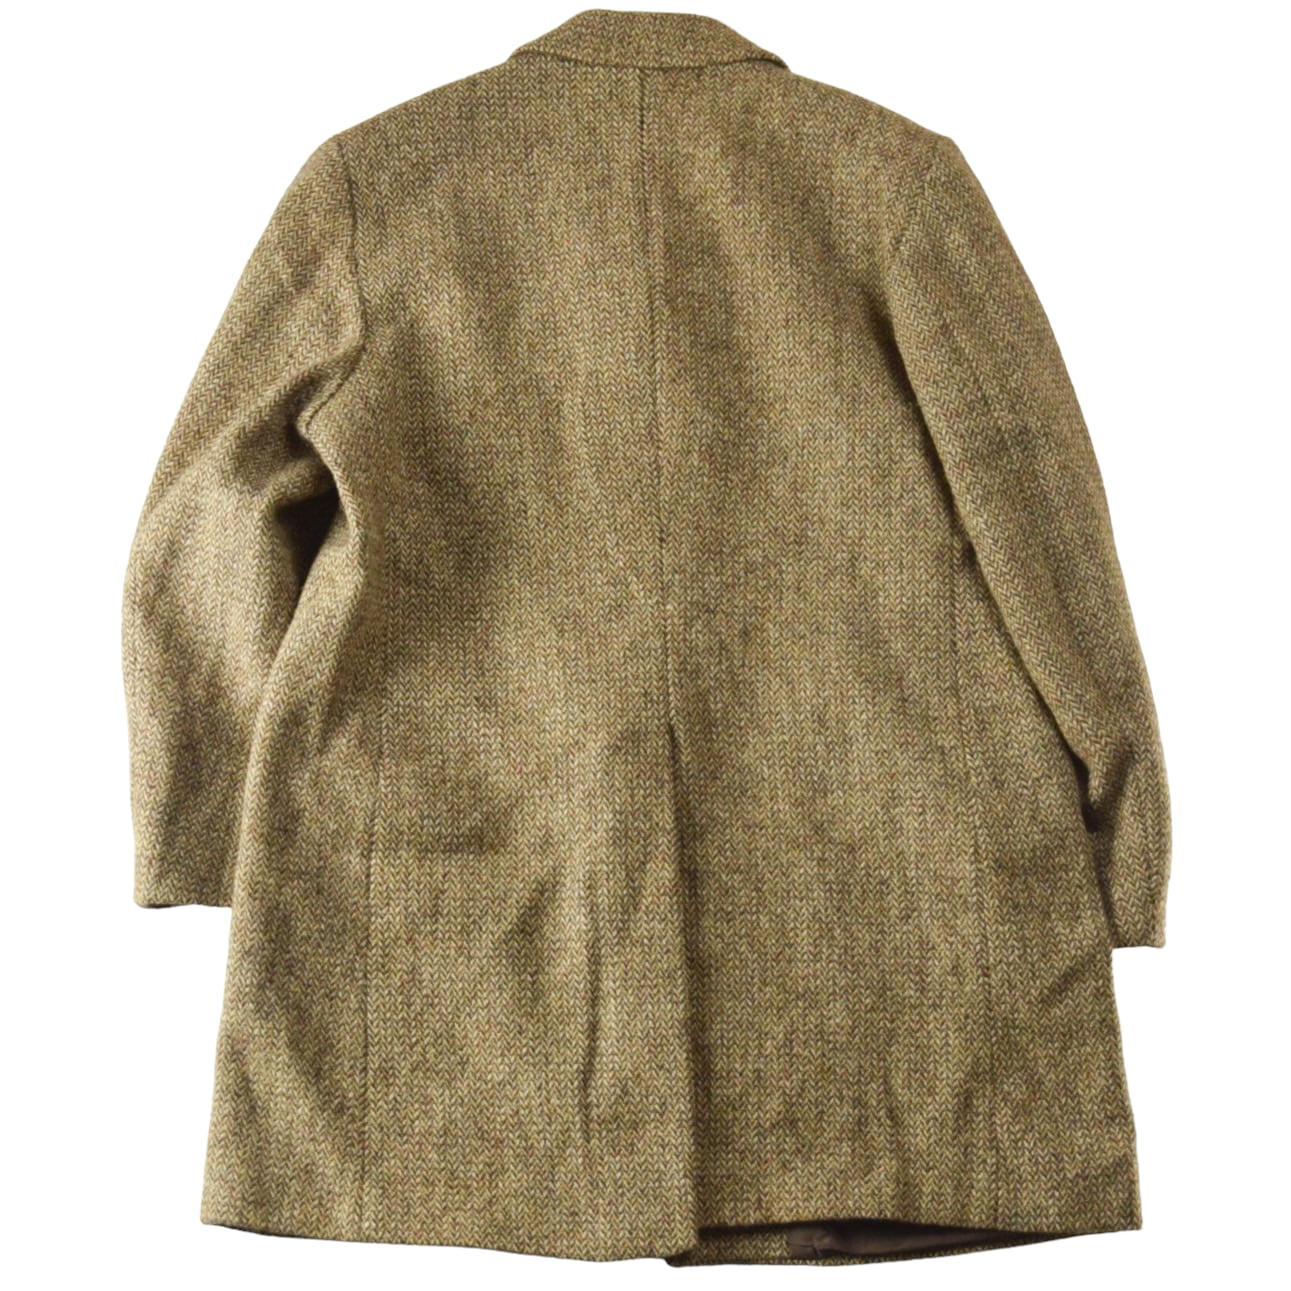 's "Harris Tweed" Vintage Tweed Wool Coat Made In ENGLAND /